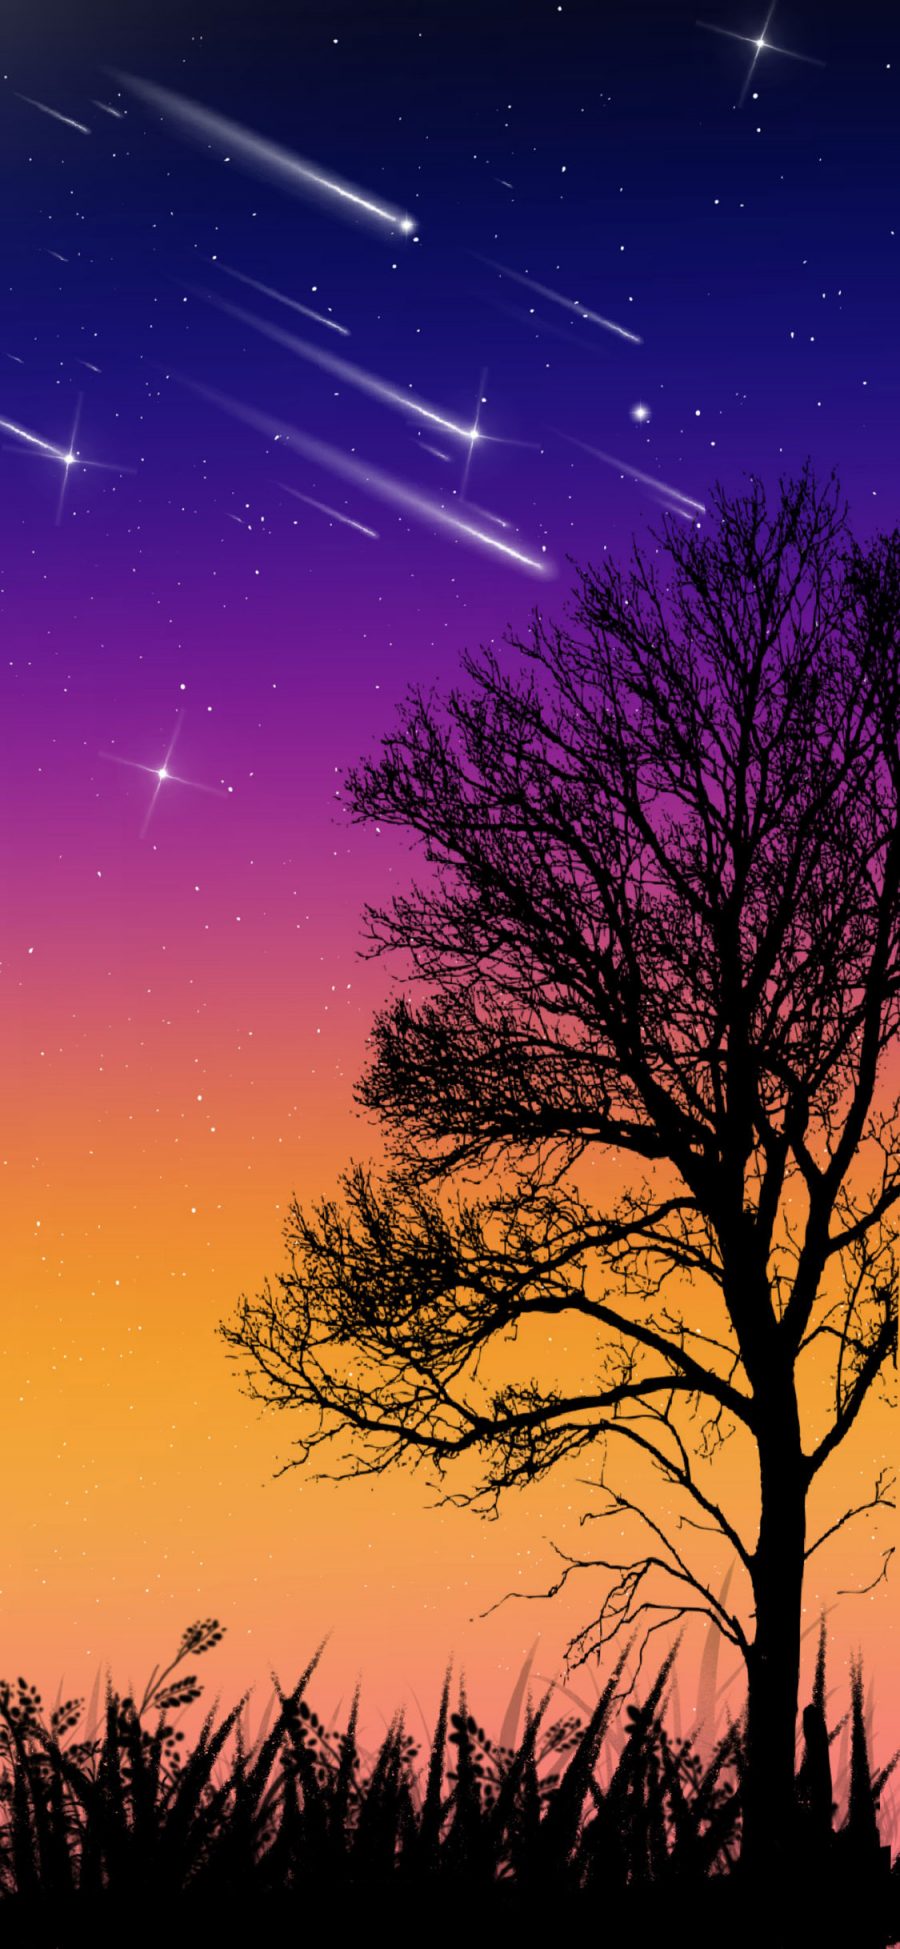 [2436×1125]插图 星空夜景 流星 树木 苹果手机动漫壁纸图片